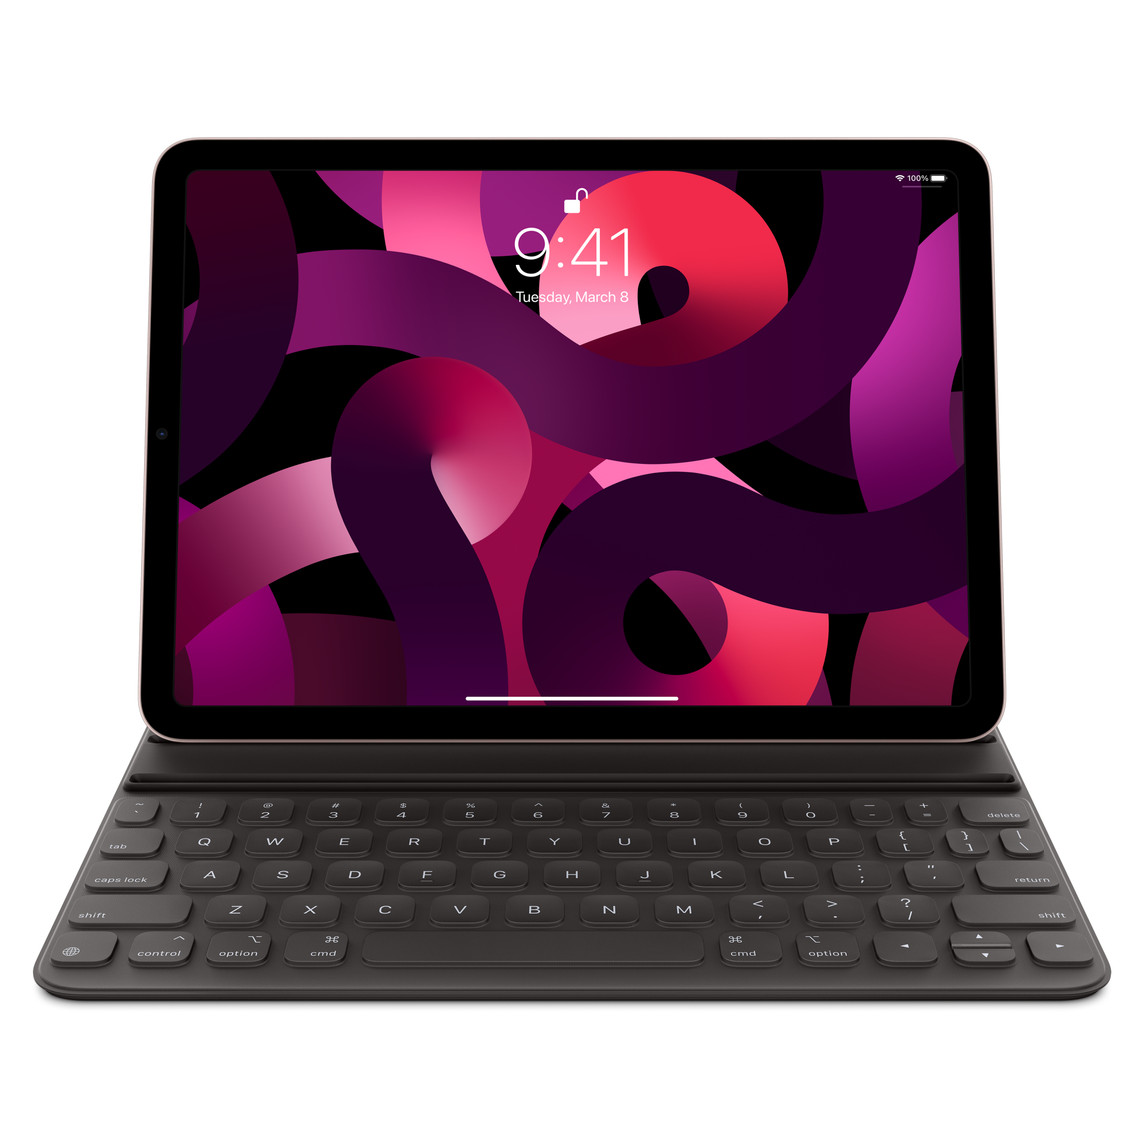 Vista frontal del iPad Pro de 11 pulgadas gris espacial con el Smart Keyboard Folio negro conectado. Pantalla del iPad que muestra una imagen colorida.